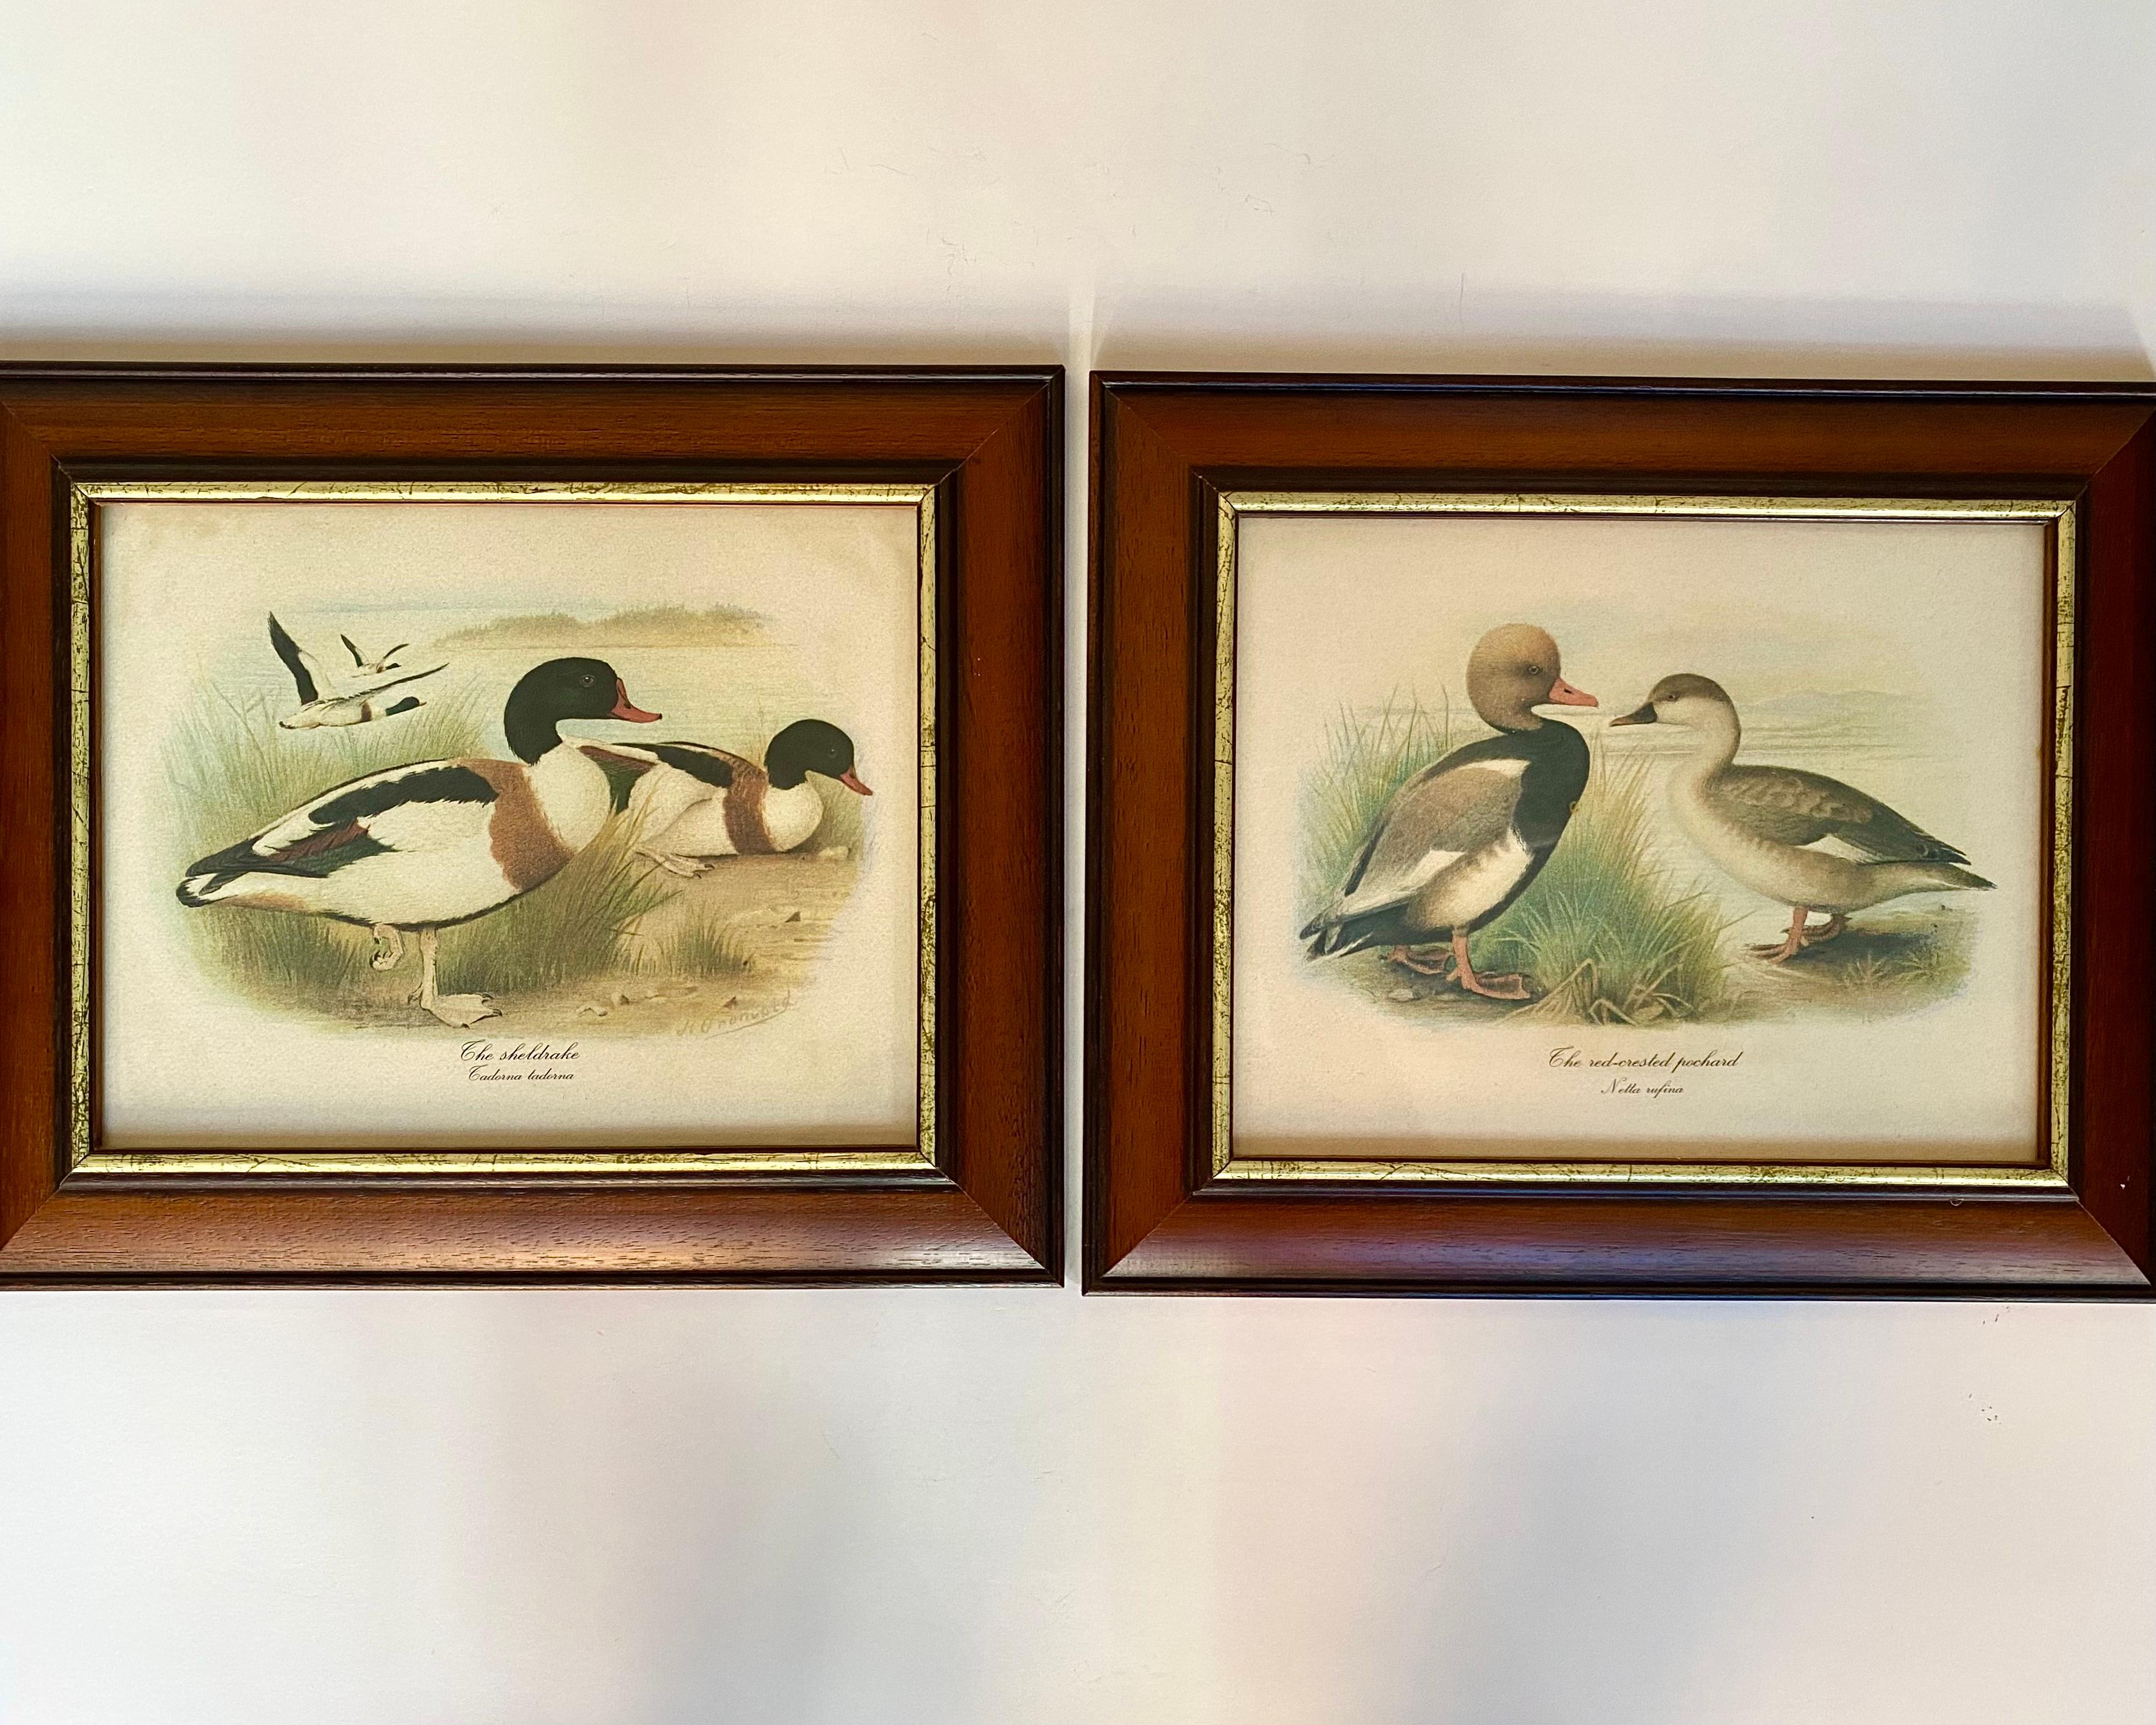 Ein charmantes Set aus 2 Wandbehängen mit verschiedenen Entenvögeln.

Vögel: Kolbenente, Schellente.

Sie sind in ihrem natürlichen Lebensraum, einem grasbewachsenen Gewässer, abgebildet, also höchstwahrscheinlich einem Teich oder einem Fluss. Die